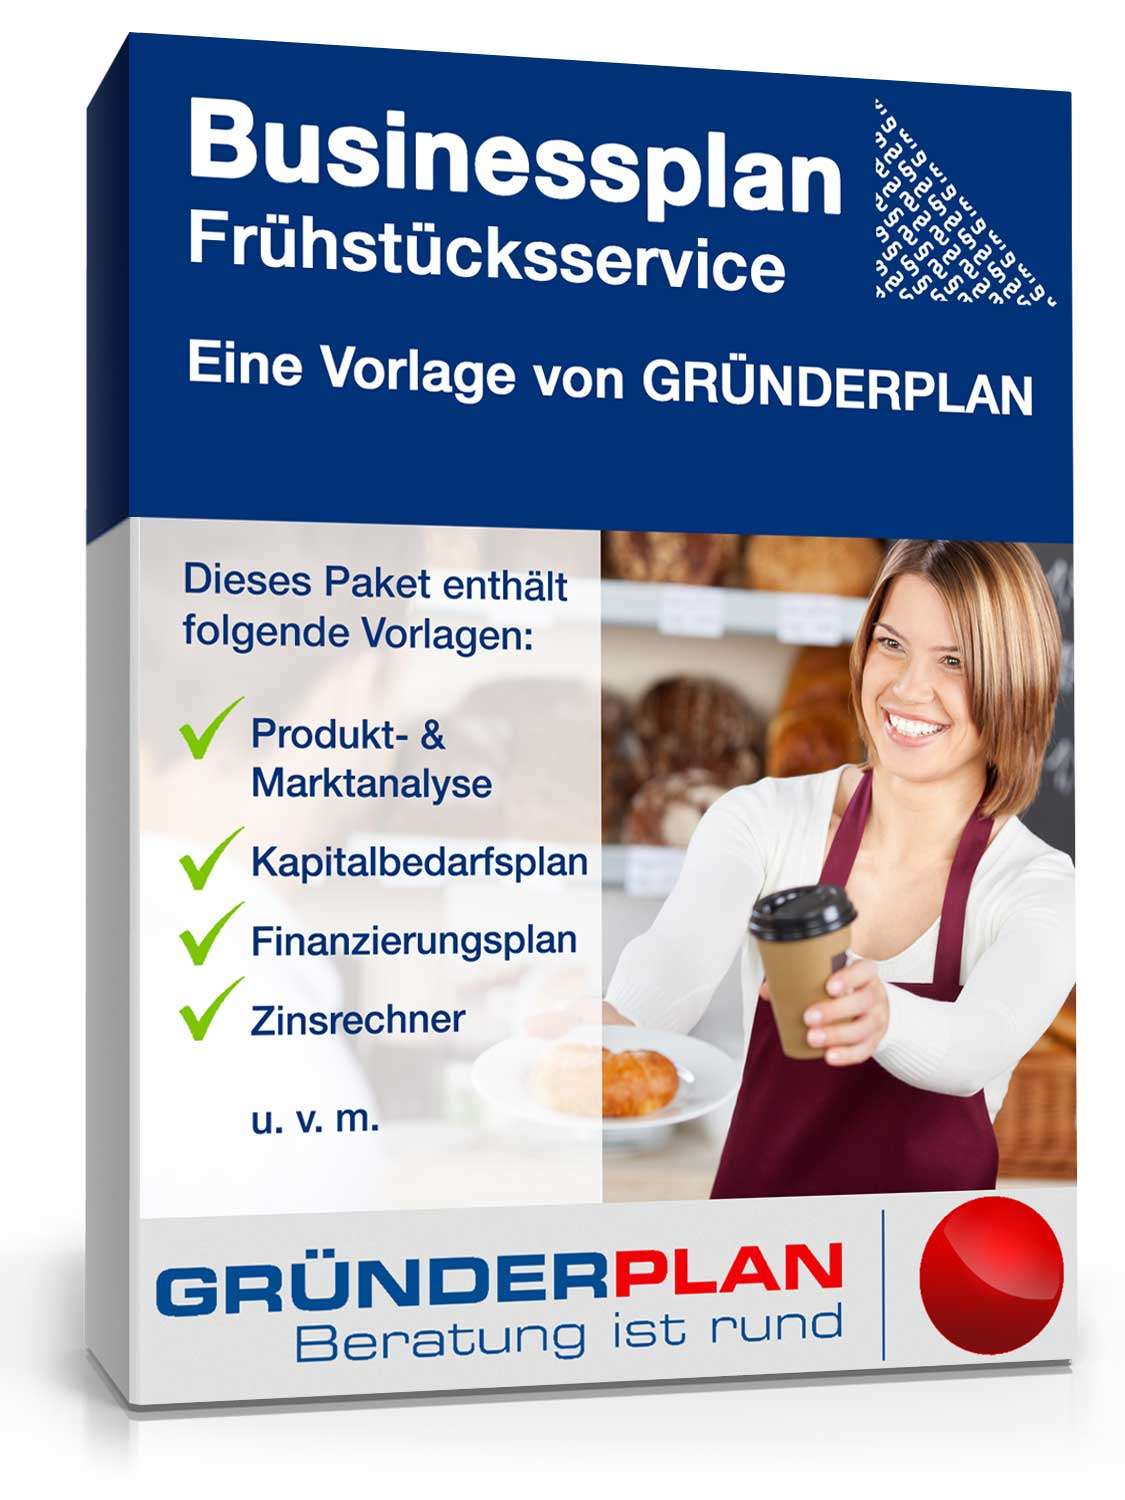 Hauptbild des Produkts: Businessplan Frühstücksservice von Gründerplan